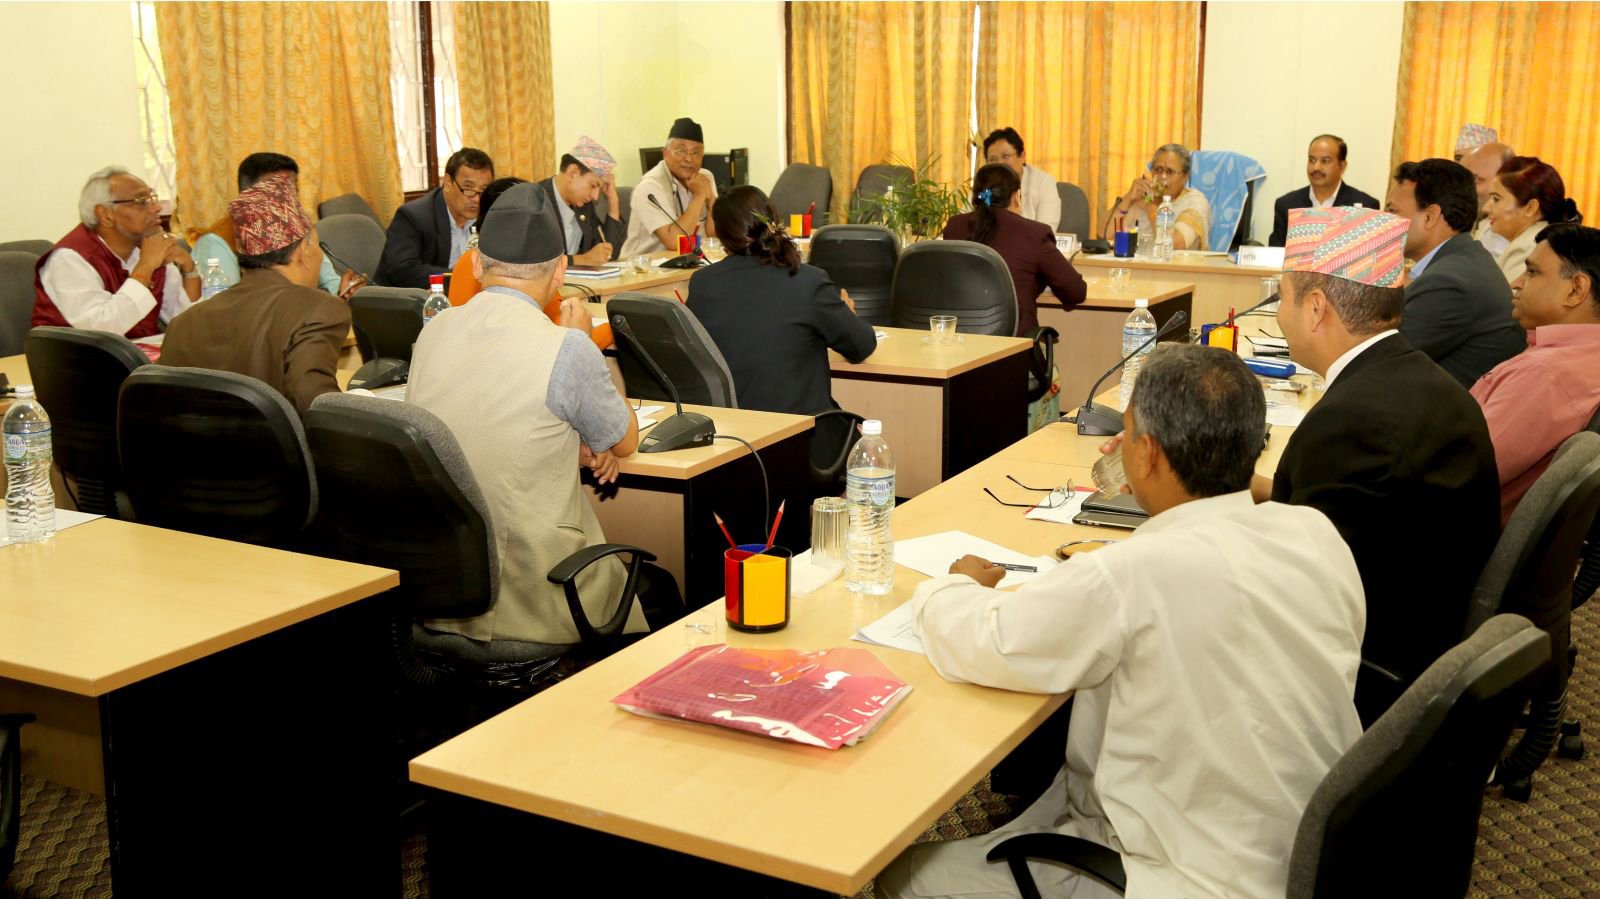 संसदीय समितिप्रति सांसदहरुको बेवास्ता : कोरम नपुग्दा राज्य व्यवस्था समितिको बैठक बस्नै सकेन